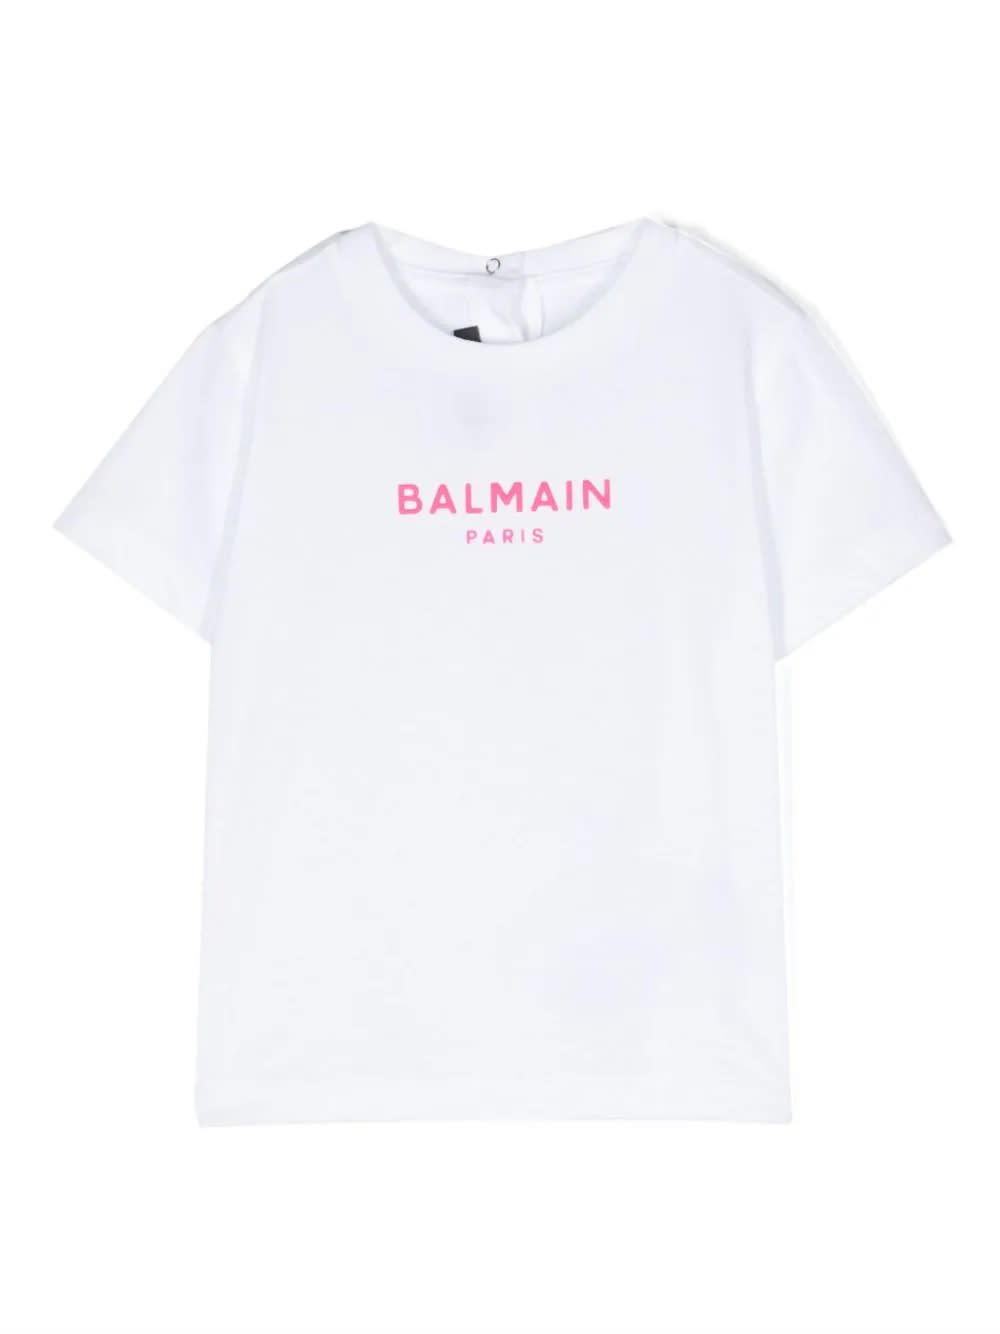 Balmain Kids' T-shirt Neonato In White